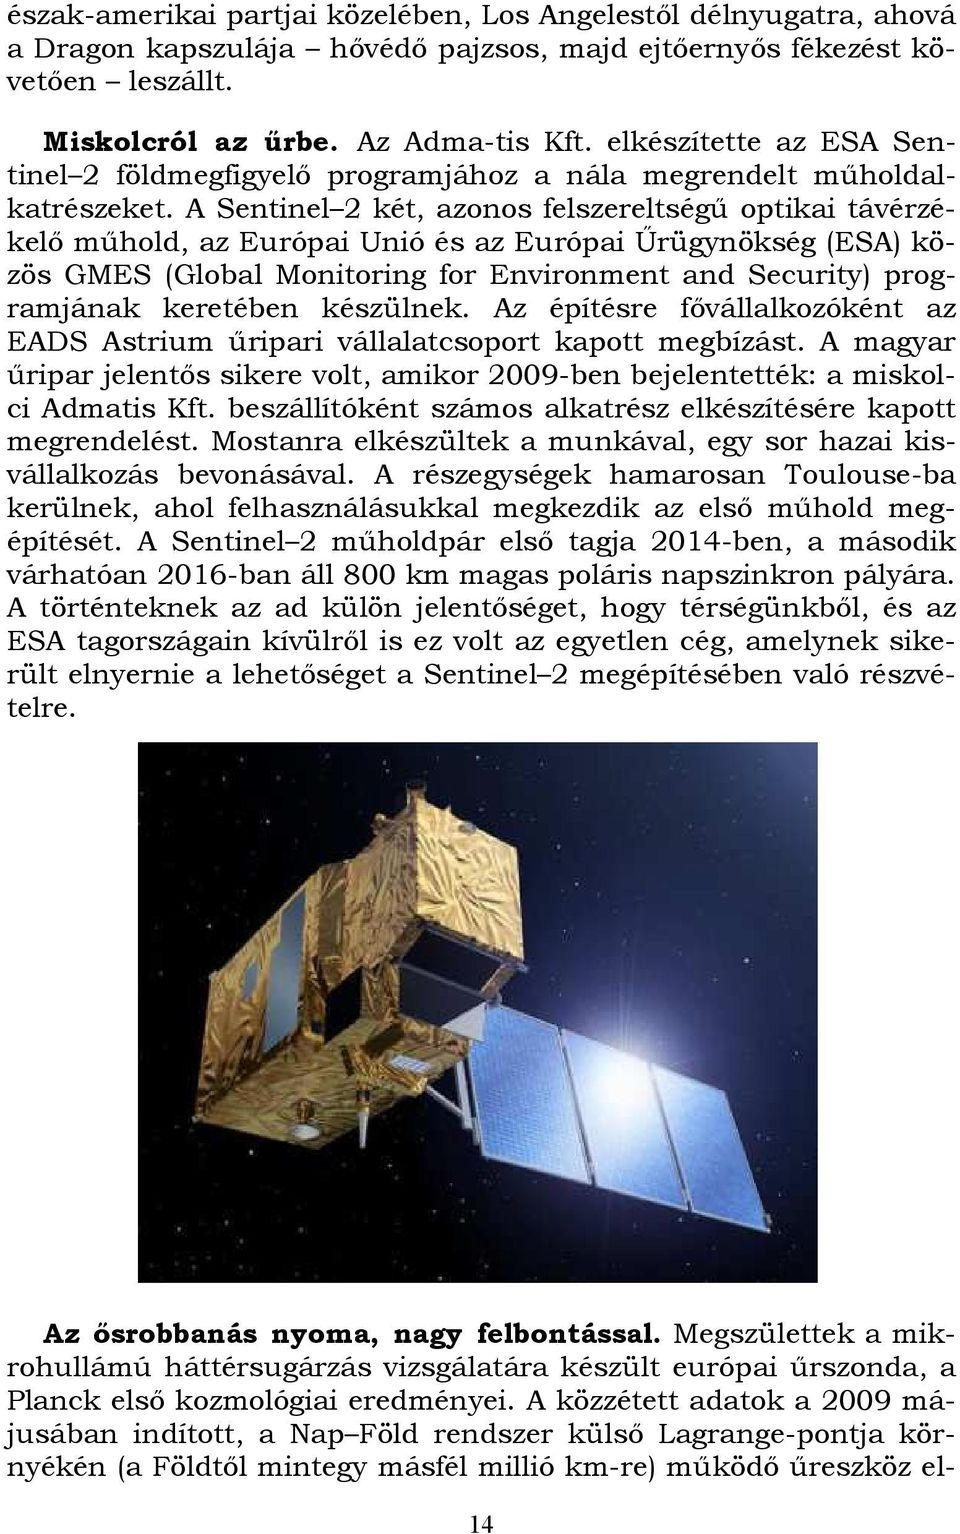 A Sentinel 2 két, azonos felszereltségű optikai távérzékelő műhold, az Európai Unió és az Európai Űrügynökség (ESA) közös GMES (Global Monitoring for Environment and Security) programjának keretében